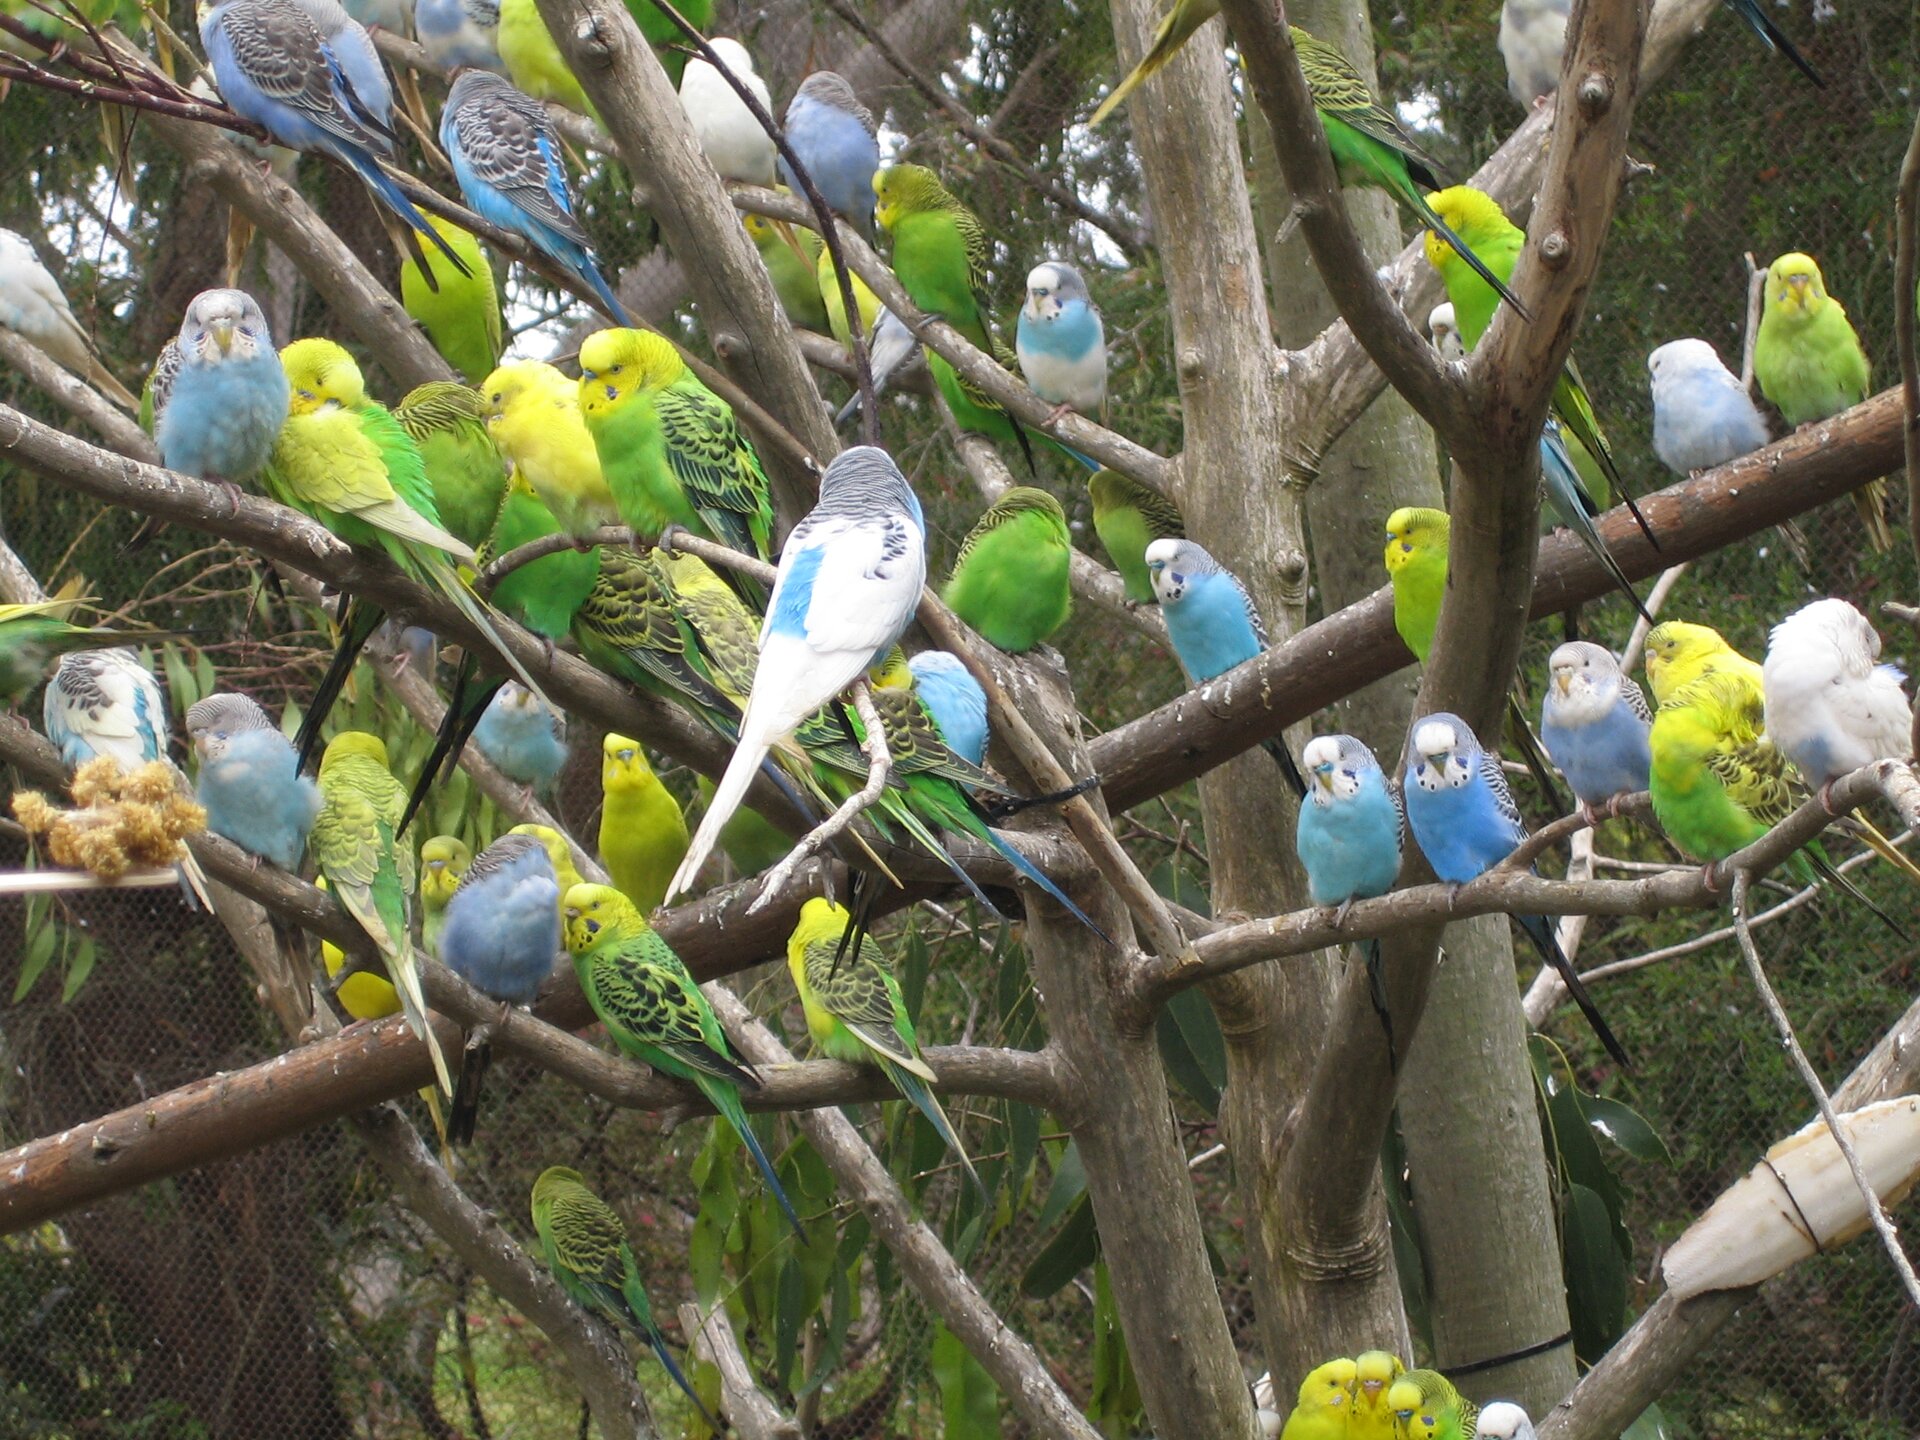 Fotografia przedstawia zielone, żółte i niebieskie papużki faliste,siedzące na drzewie. Ptaki mają różne genotypy i różne fenotypy (wygląd).